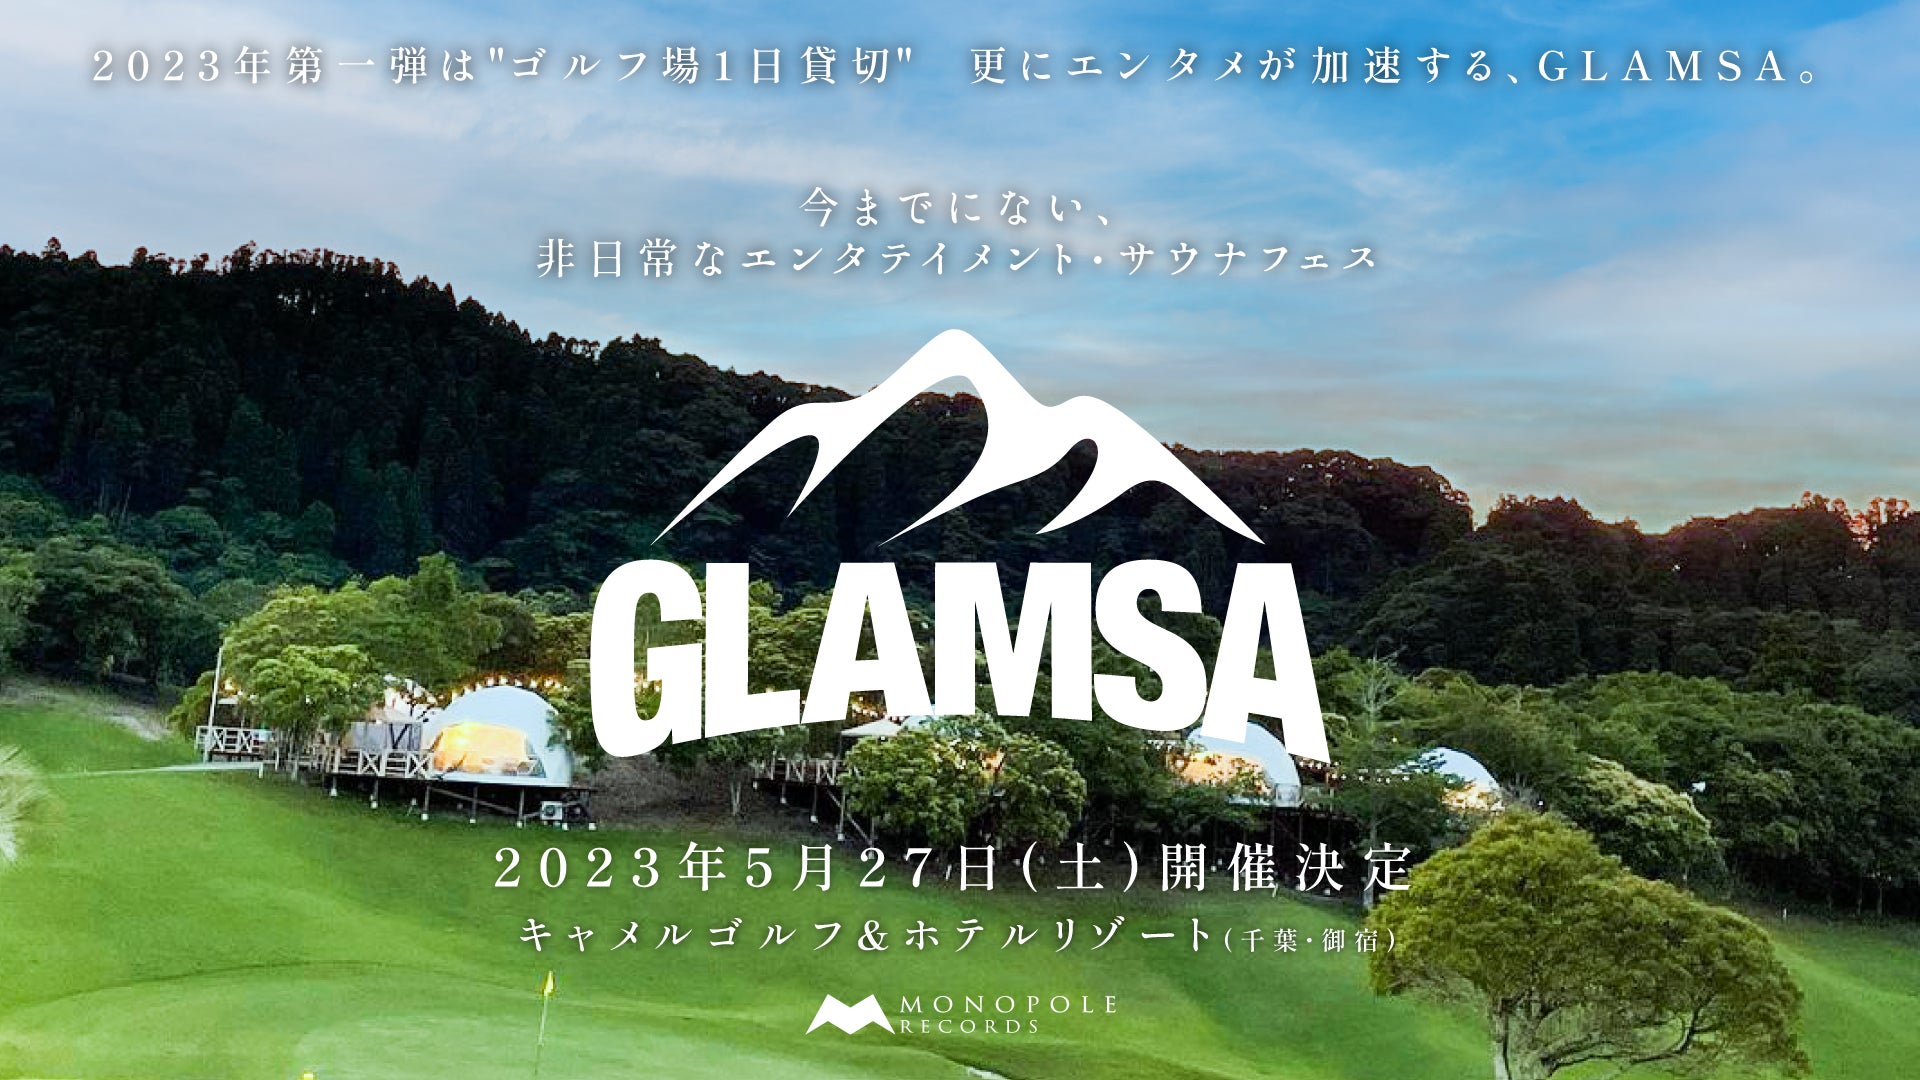 昨年大好評を博したエンタテインメント・サウナフェス「GLAMSA」の第二回開催が決定！千葉県のゴルフリゾート施設で楽しむ極上のグランピング×サウナ×音楽フェス。